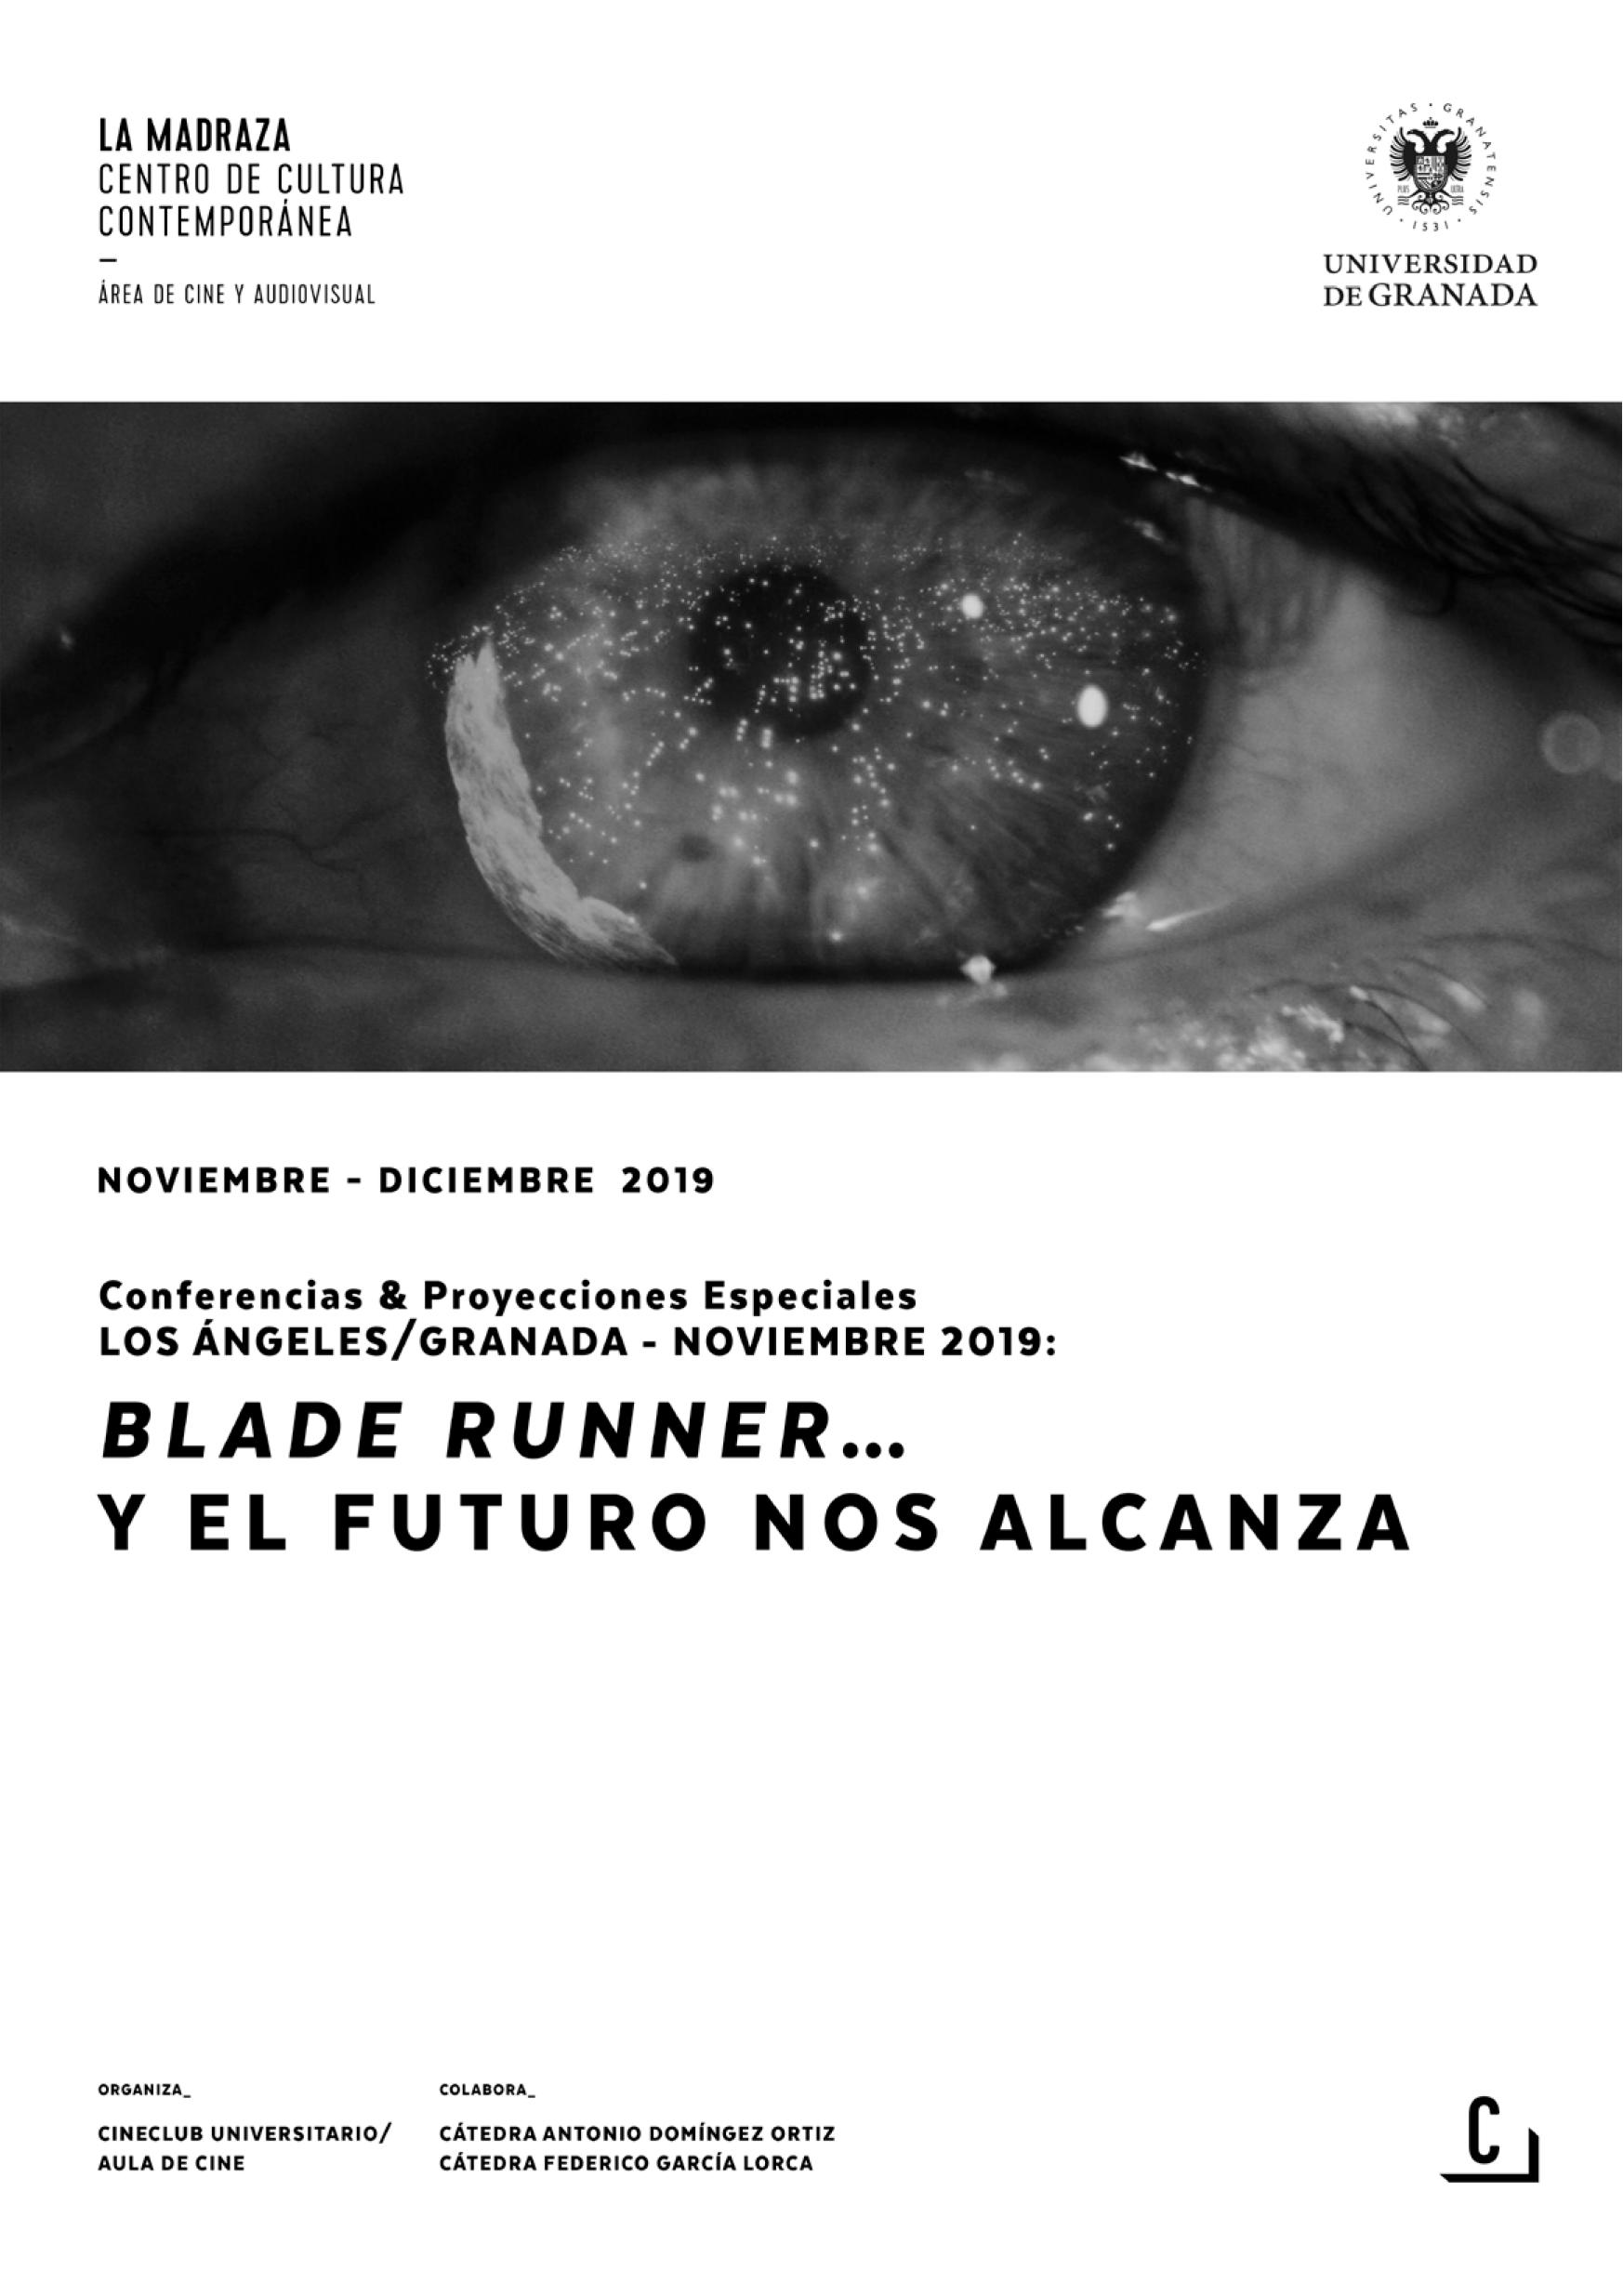 Imagen de portada de Los Ángeles/Granada – Noviembre 2019: Blade Runner y el futuro nos alcanza